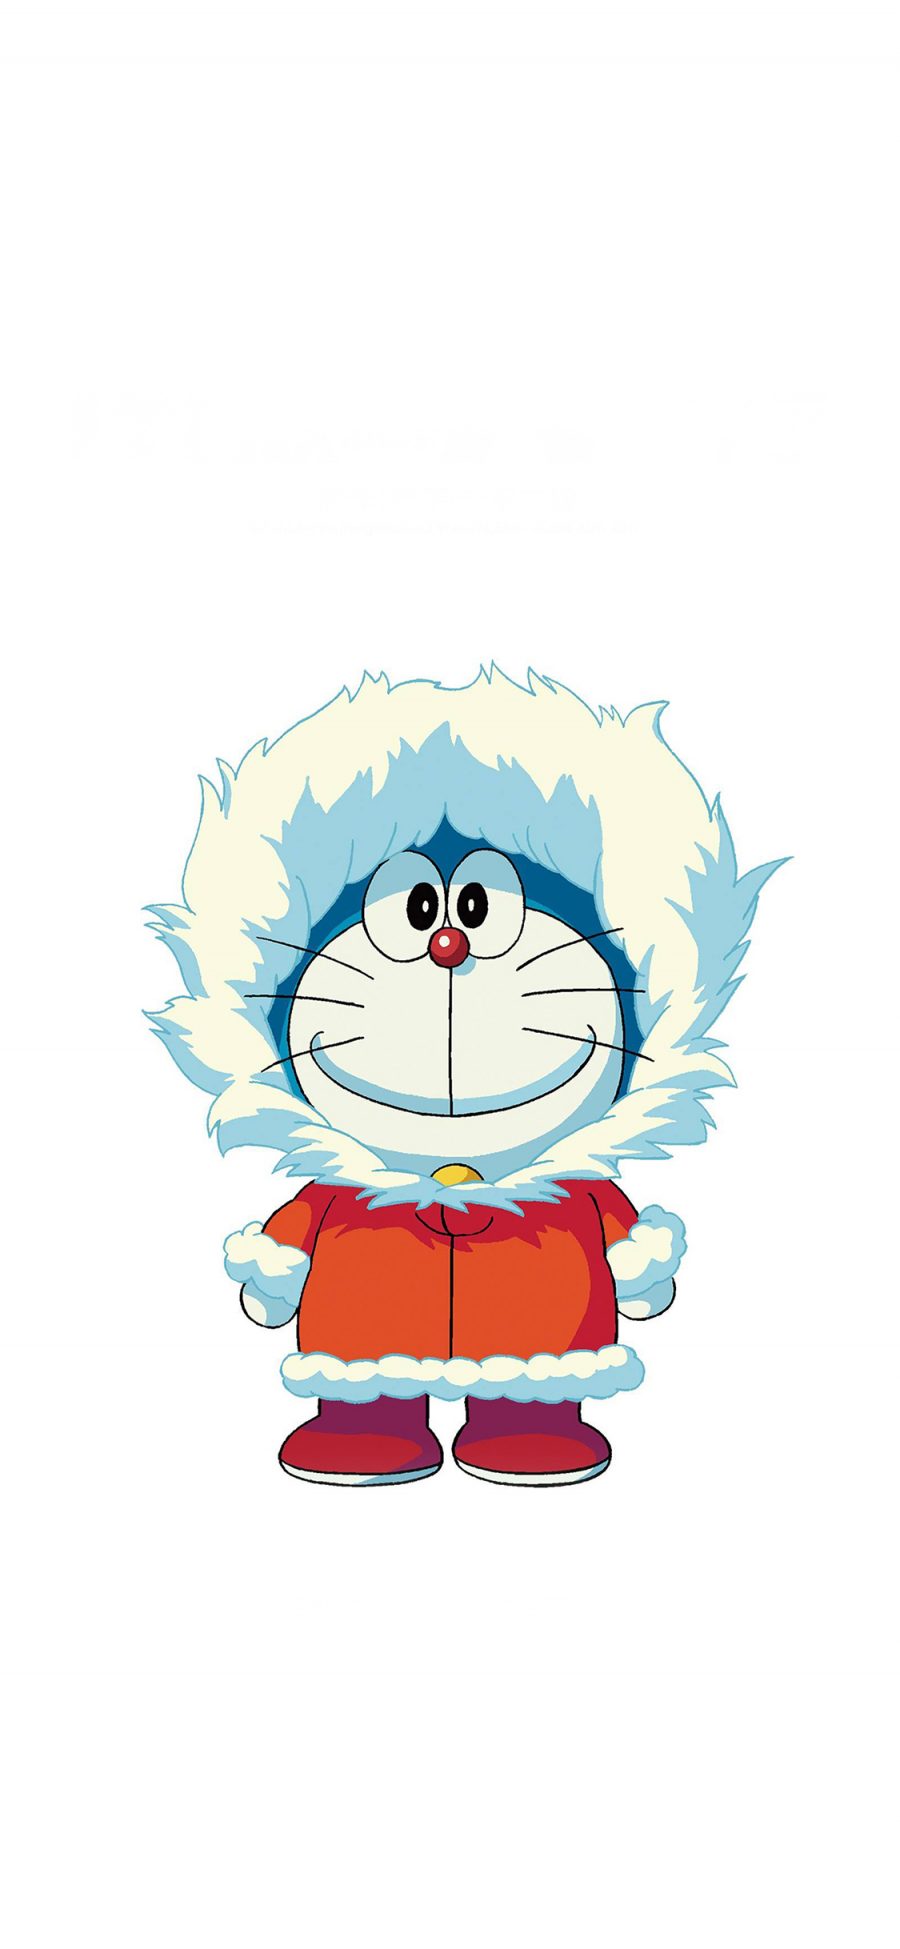 [2436×1125]哆啦A梦 南极大冒险 动画 电影 日本 苹果手机动漫壁纸图片